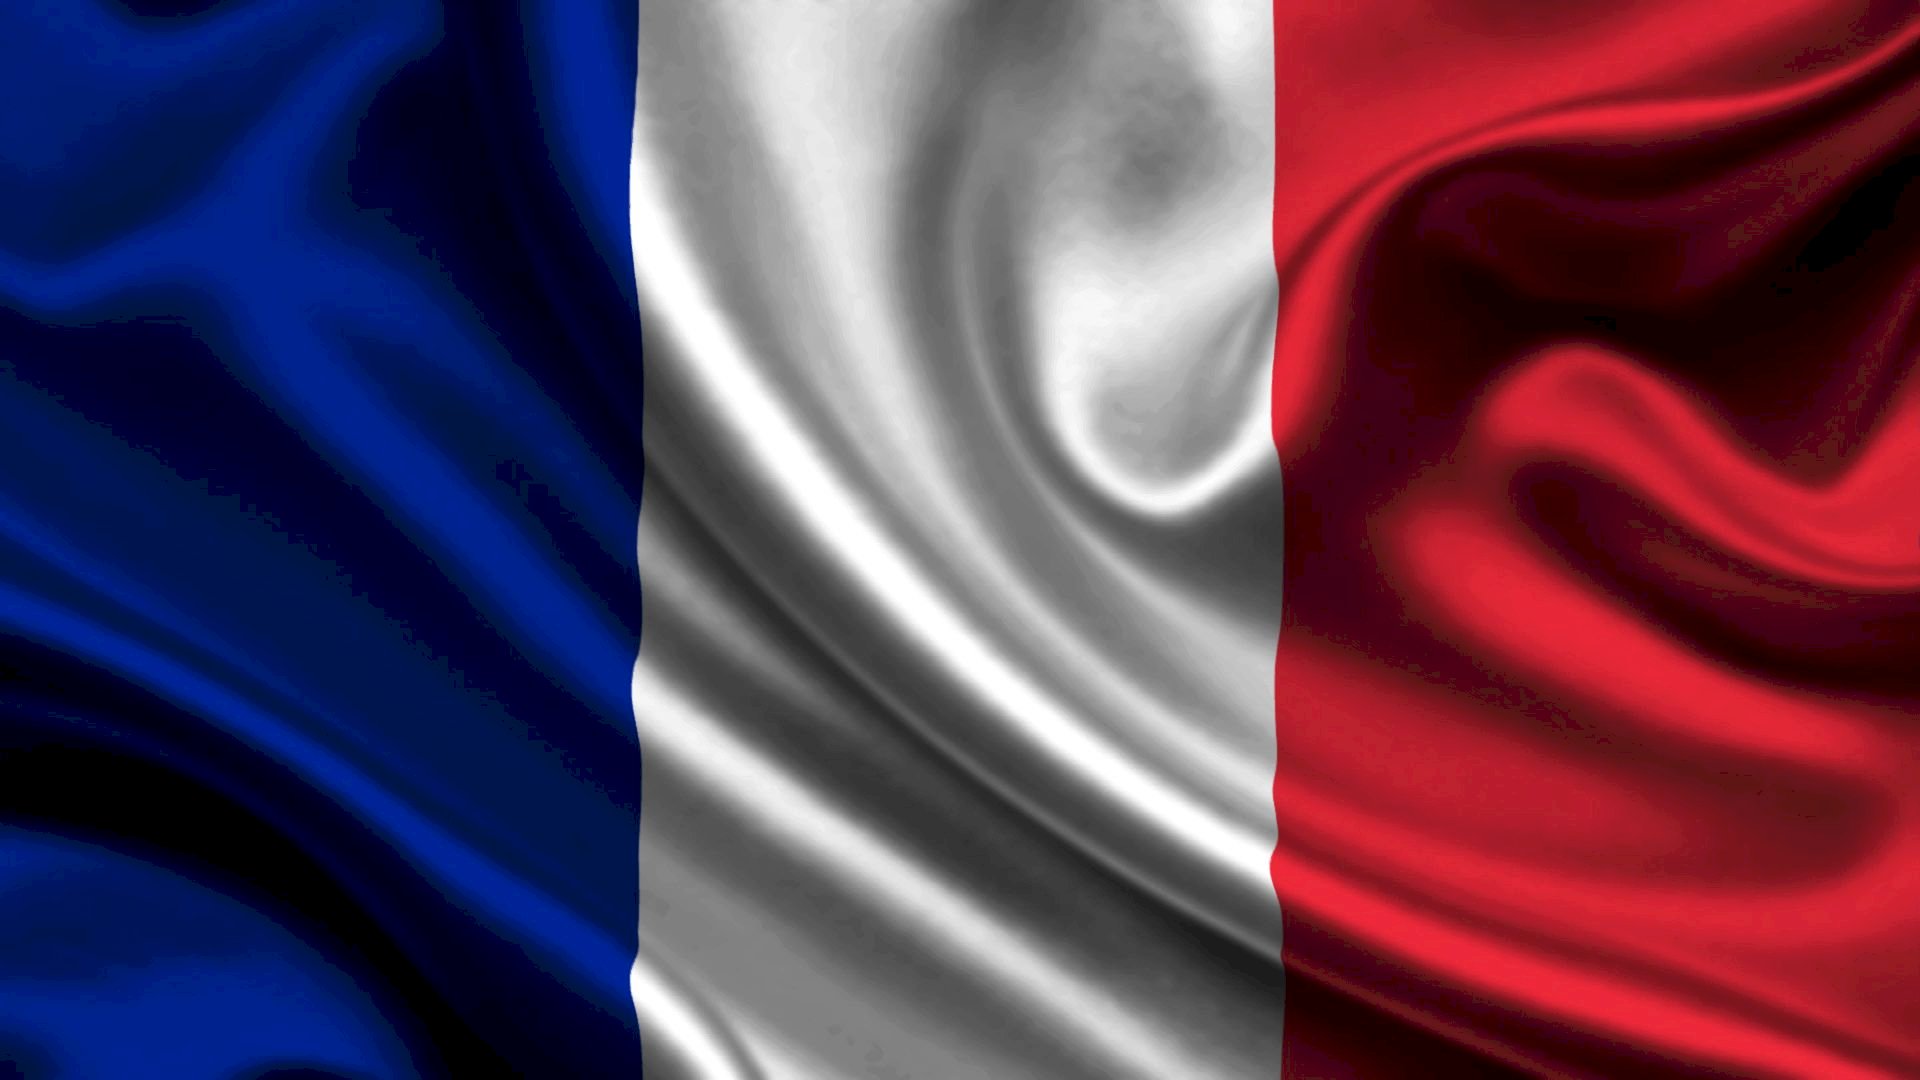 Lá cờ Pháp cũng trở thành một lựa chọn phổ biến trong việc tạo Avatar ảnh. Với sự đa dạng về màu sắc và kiểu dáng, nó sẽ giúp bạn tạo ra một hình ảnh độc đáo và đầy tính cá nhân của mình. Hãy tìm kiếm và sử dụng ảnh lá cờ Pháp như một Avatar để thể hiện sự tôn trọng và yêu quý đất nước này.